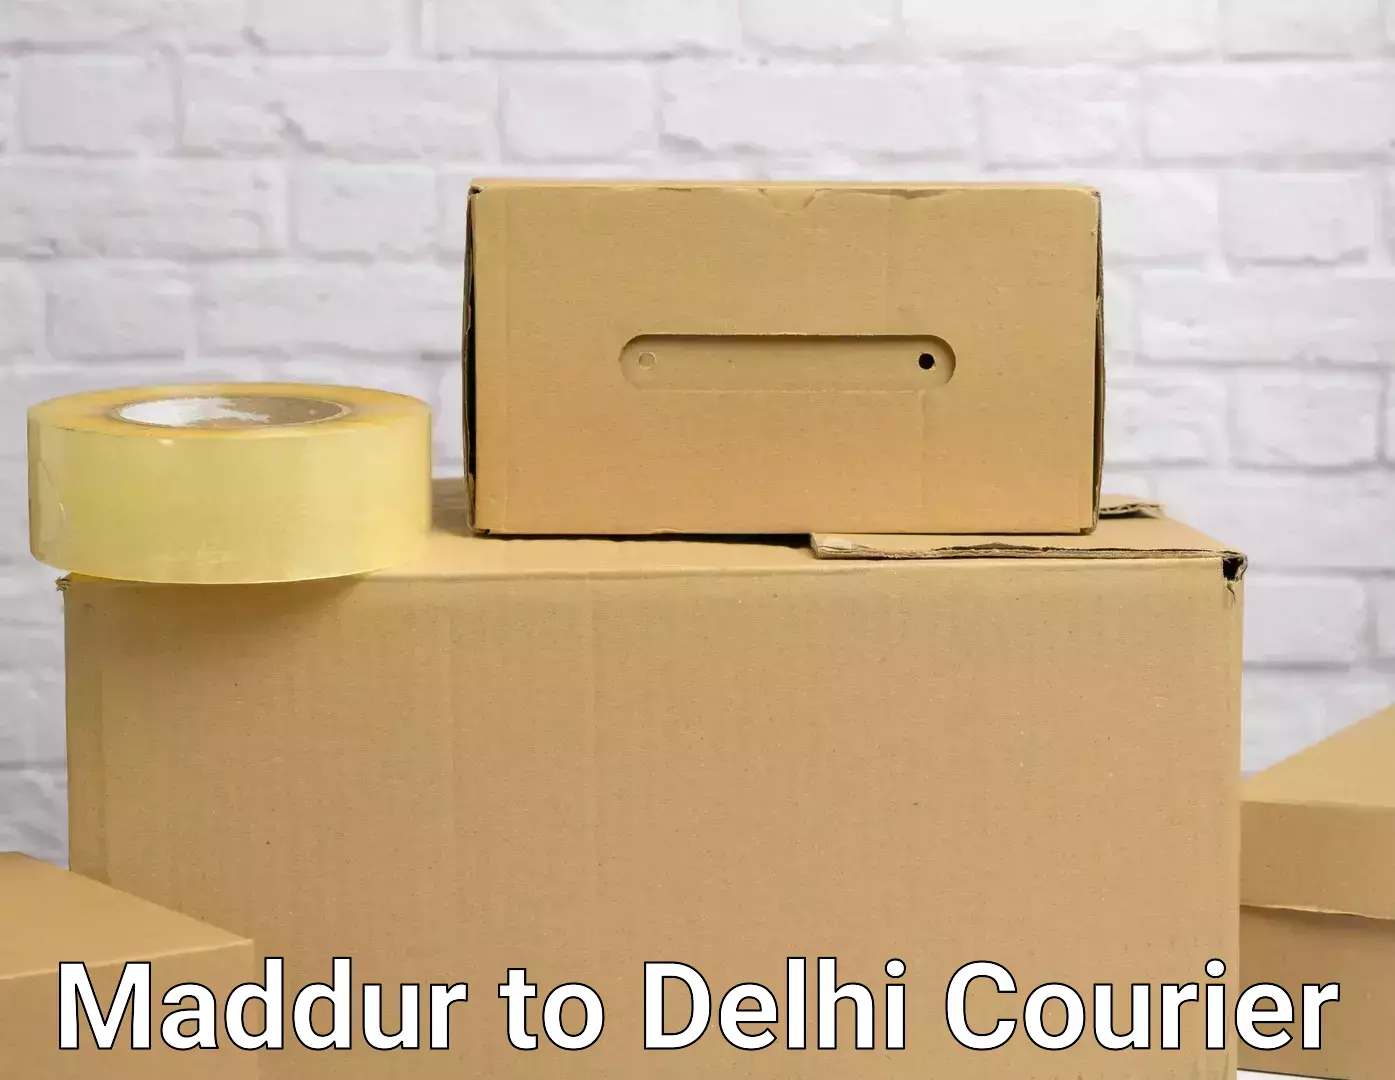 Furniture transport services in Maddur to Jamia Millia Islamia New Delhi